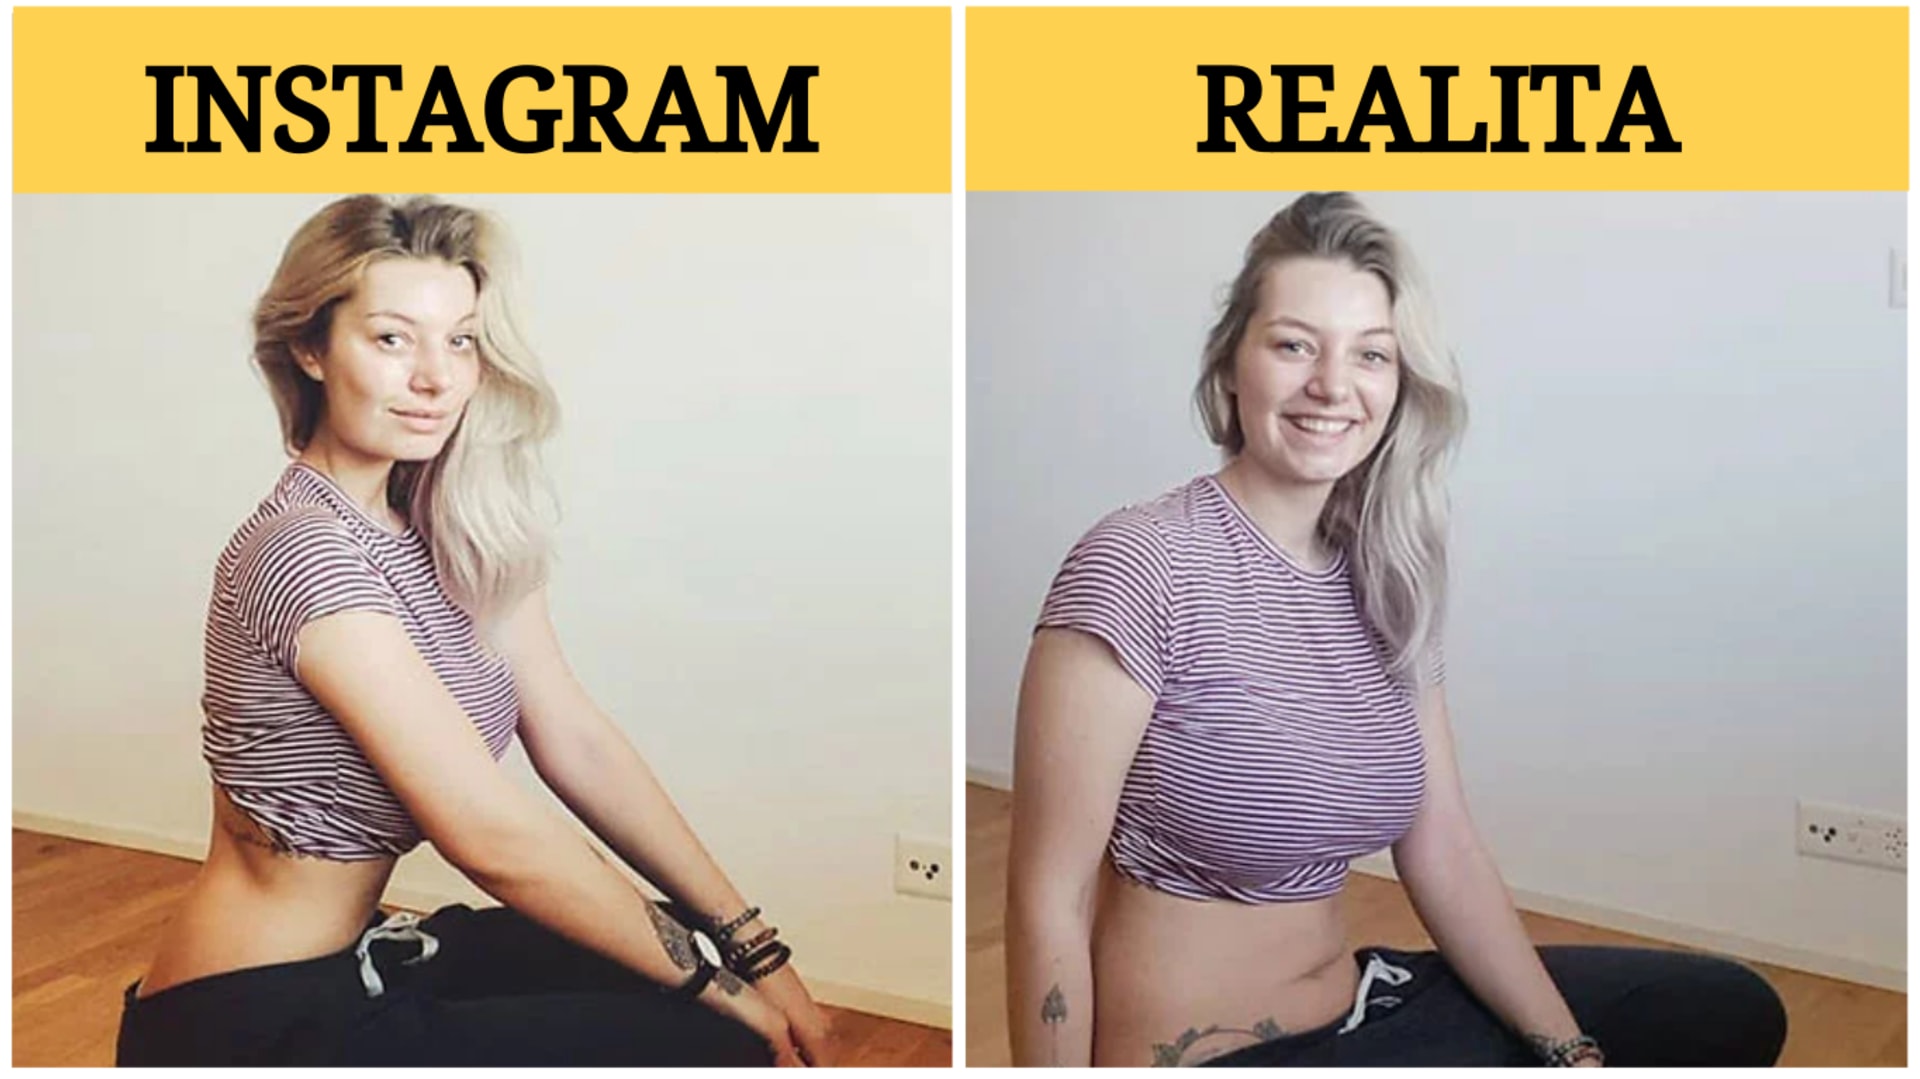 Žena ukazuje rozdíl mezi fotkami na Instagramu a realitou 20